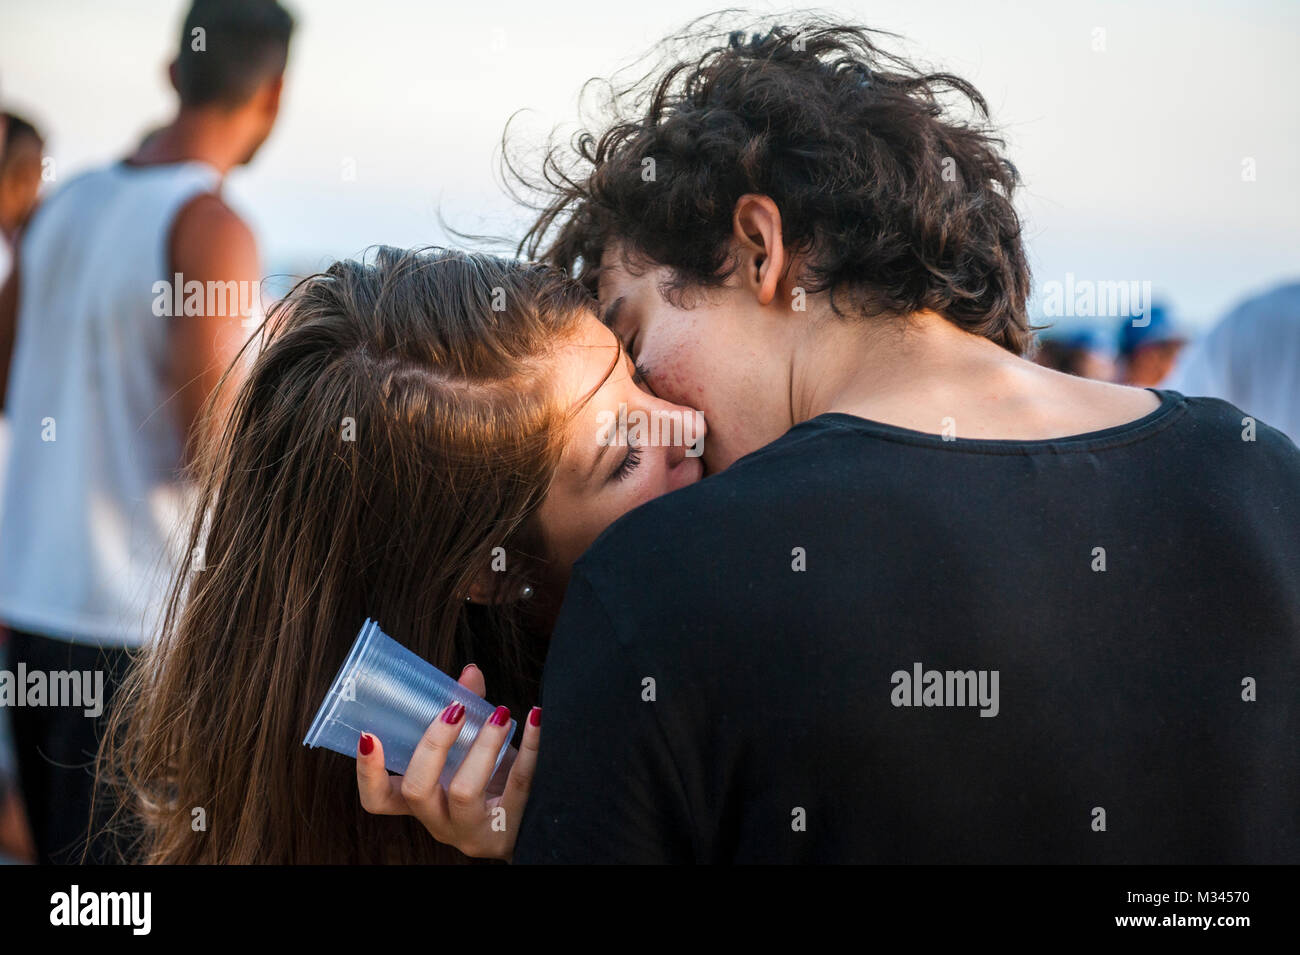 RIO DE JANEIRO, Brésil - circa 2017, février : Jeune couple embrasser au milieu de la rue au cours d'un carnaval bloco street party à Ipanema. Banque D'Images